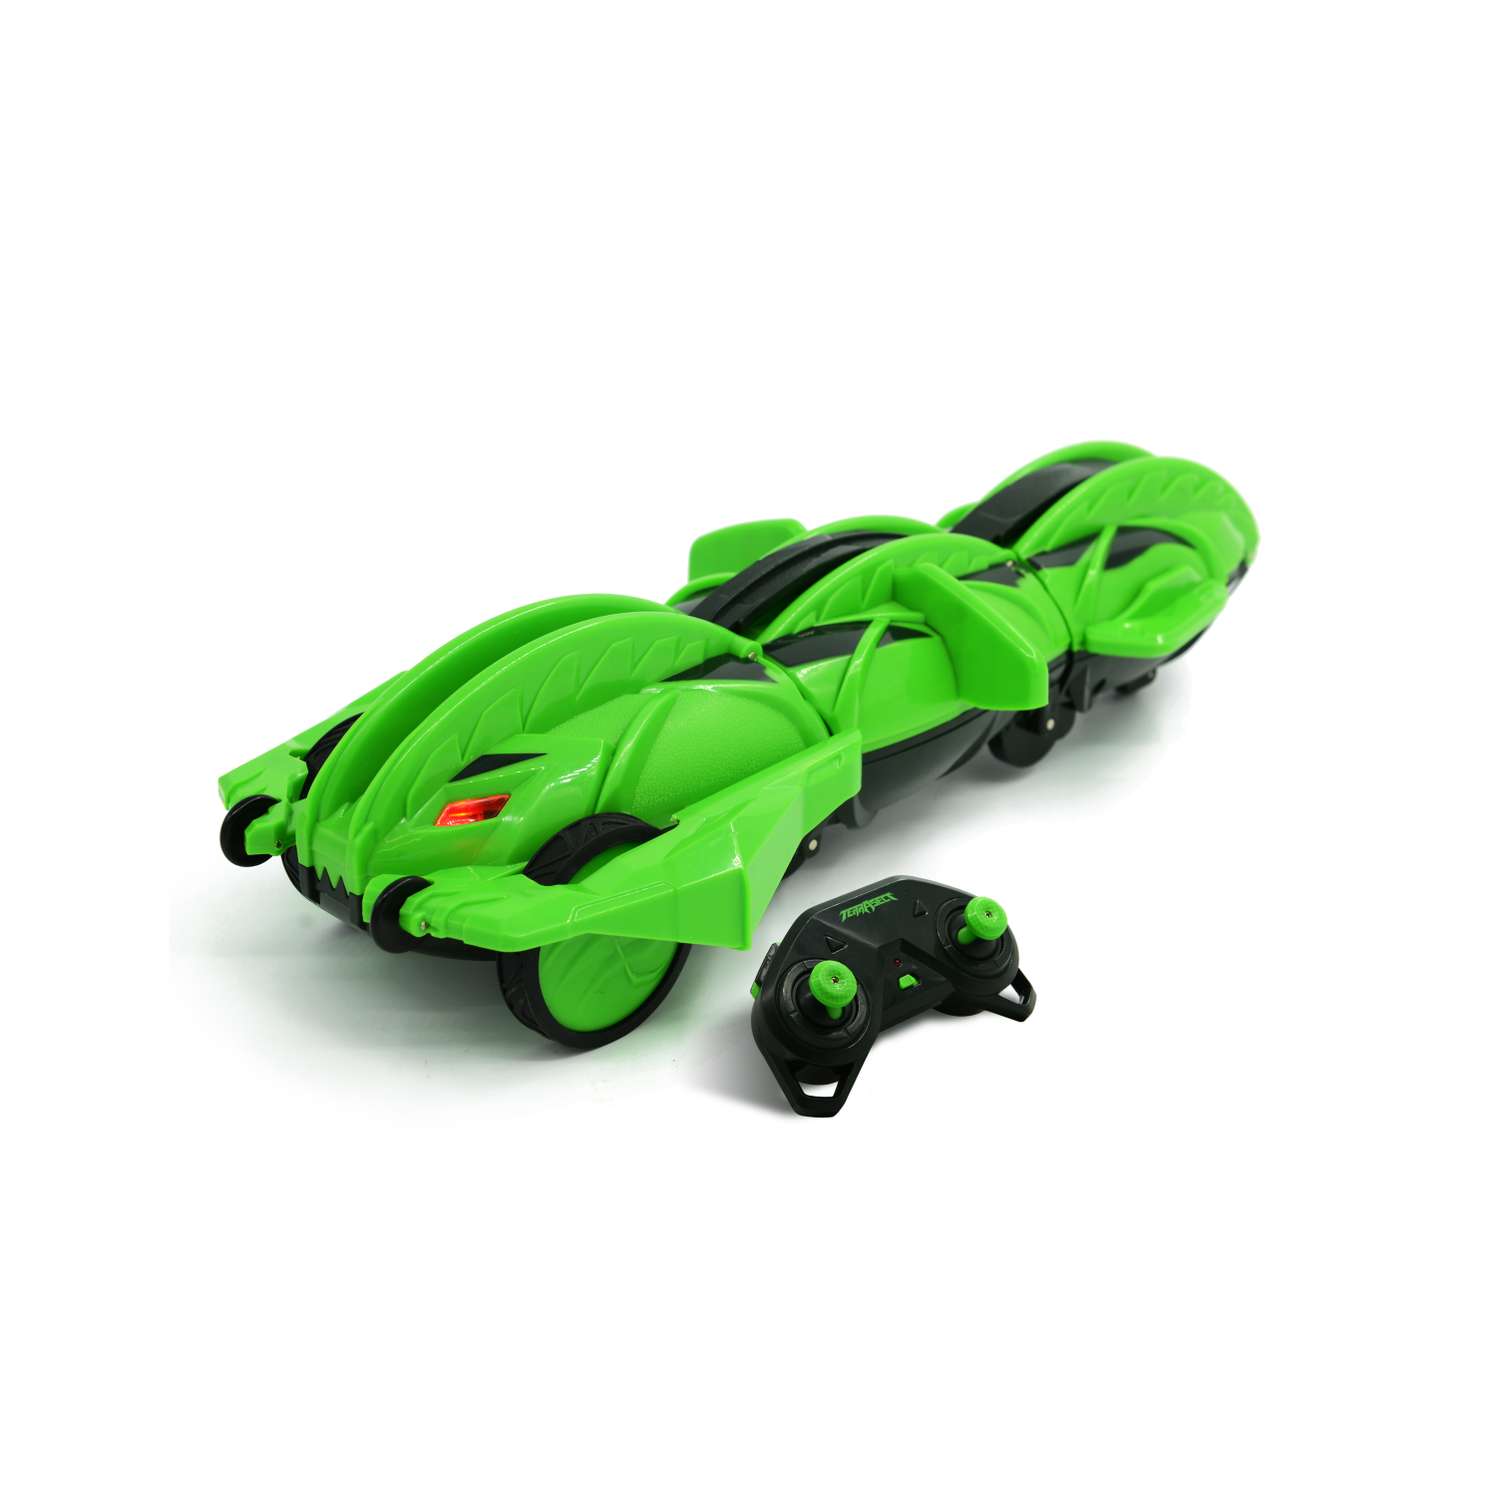 Игрушка радиоуправляемая Terra Sect машинка трансформер в виде ящерицы зеленая - фото 4